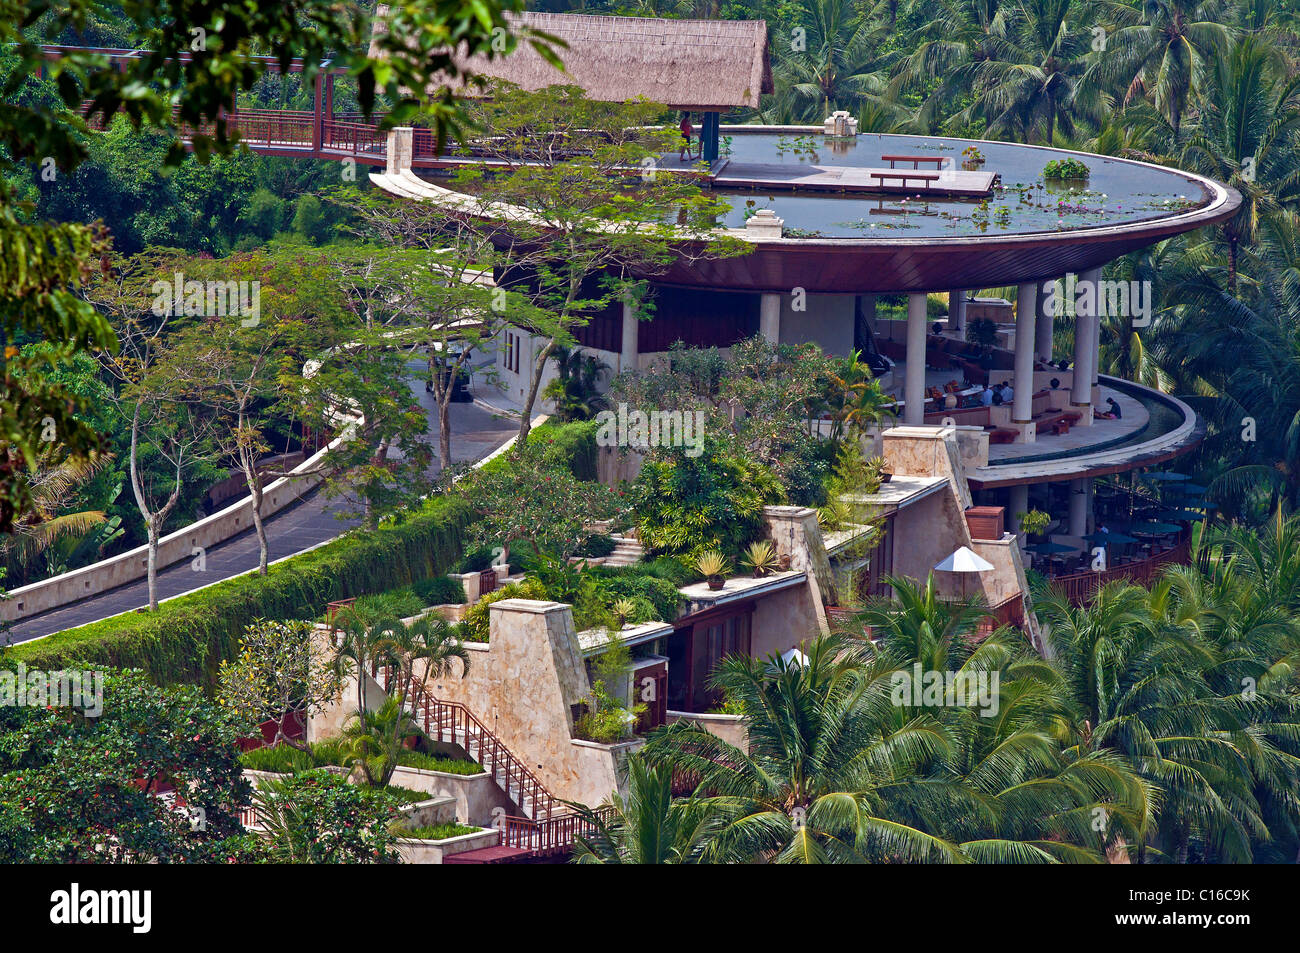 Le luxueux hôtel four Seasons est situé au milieu des rizières de Sayan dans la vallée de la rivière Ayung à Bali, en Indonésie Banque D'Images